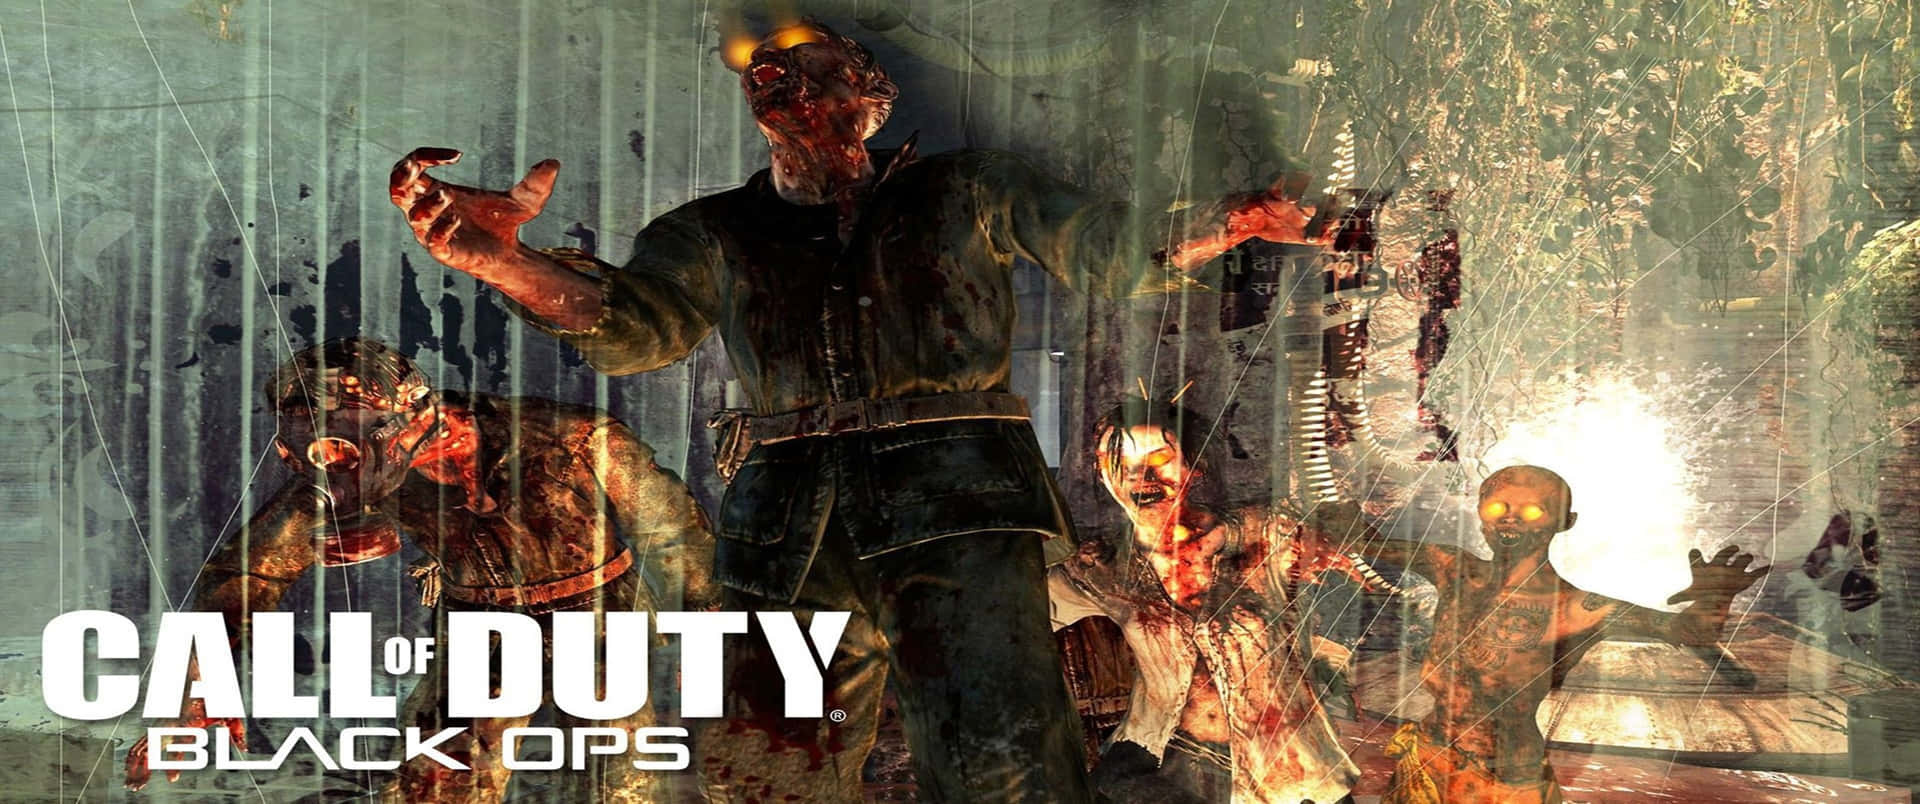 3440x1440phintergrund Für Call Of Duty Black Ops Cold War Zombies